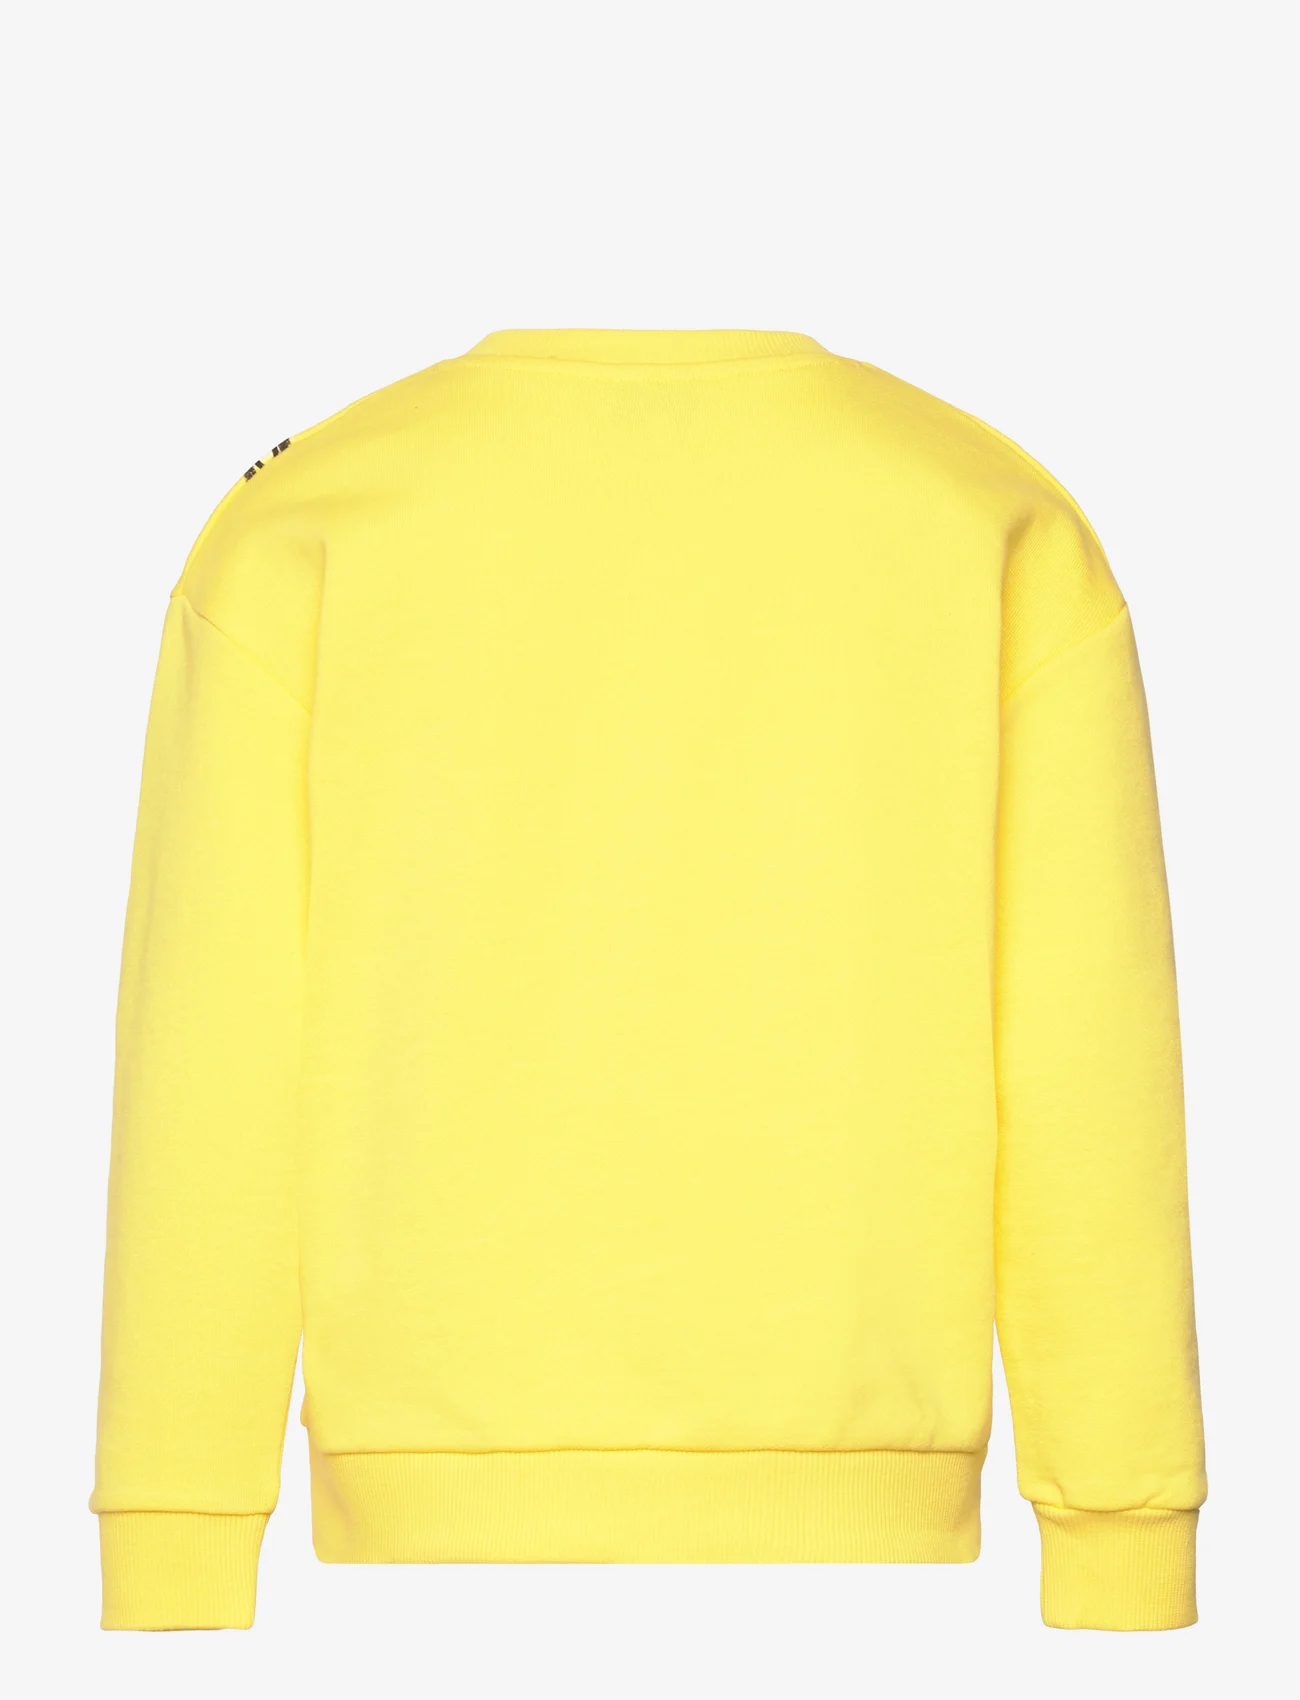 Little Marc Jacobs - SWEATSHIRT - sweatshirts - gold yellow - 1